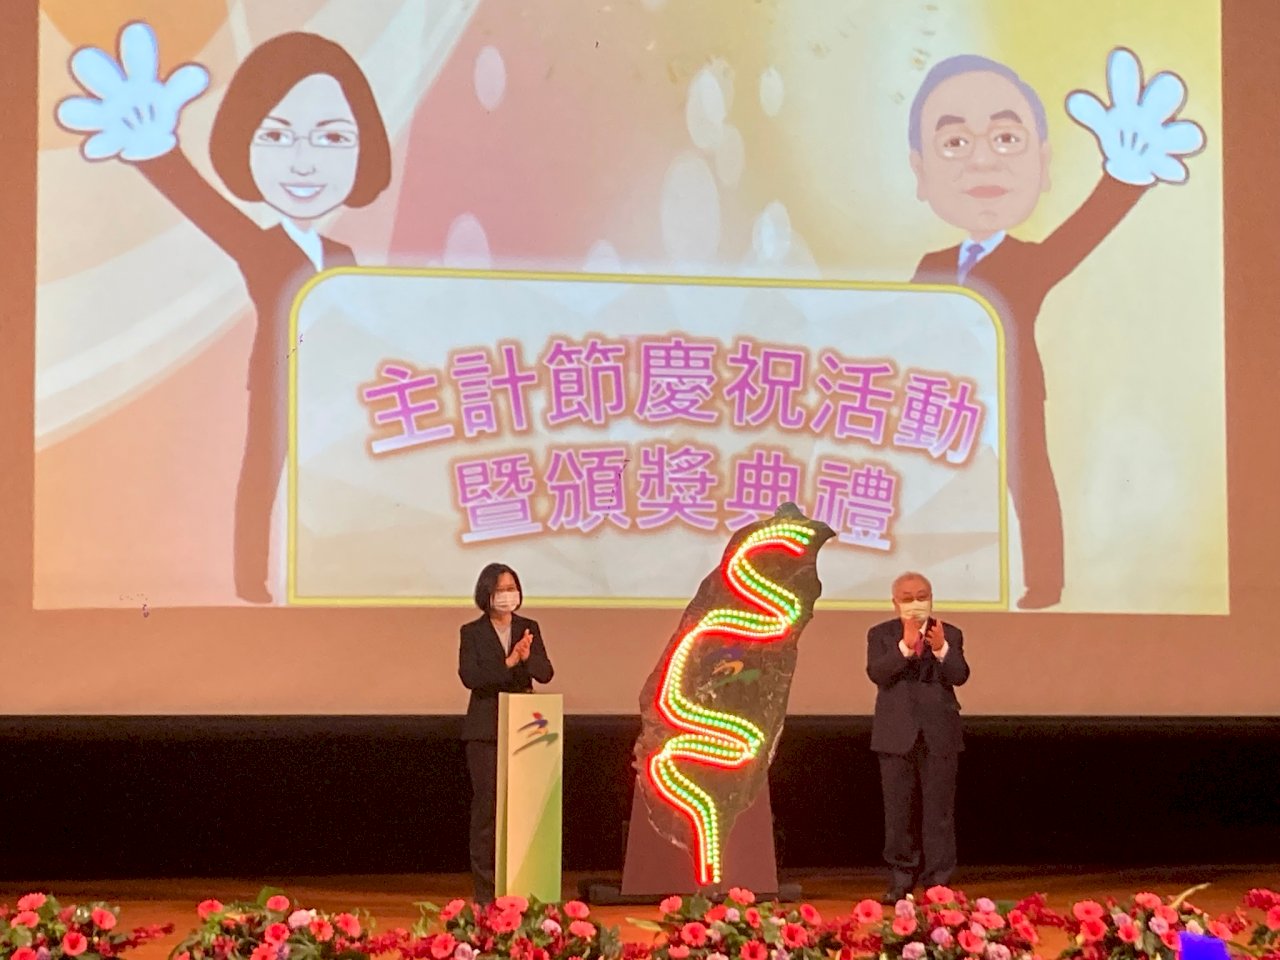 차이 총통, 통계기관이 재정 양호에 도움됐다며 다수 국제신용평가기관들이 타이완에 긍정적 평가를 했다고 치하